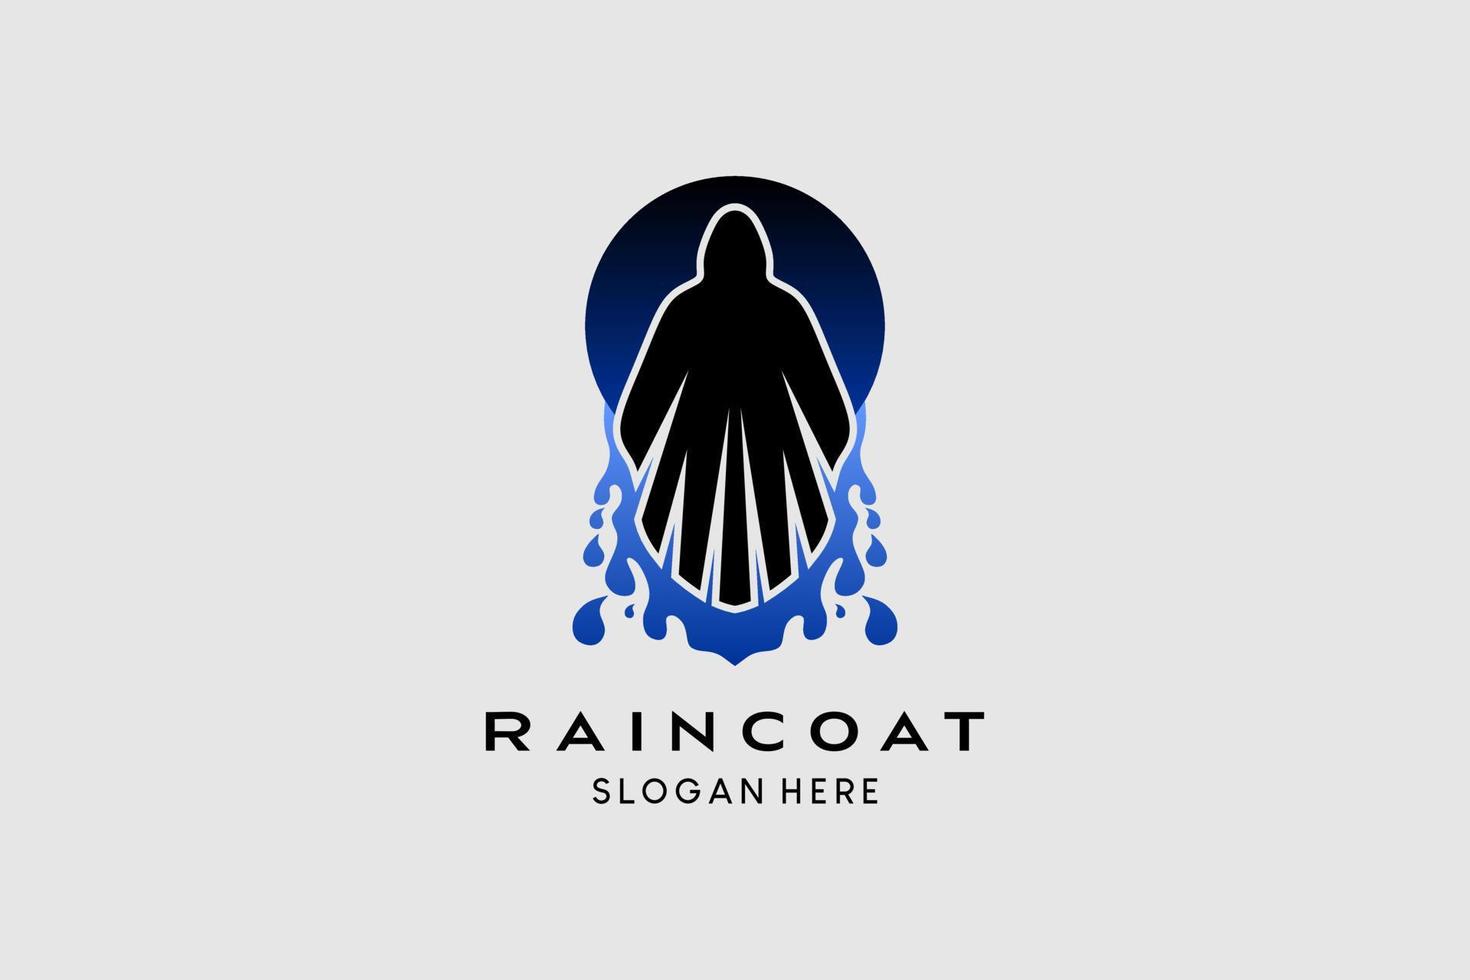 la conception du logo de la veste de pluie avec un élément d'eau se marie avec la silhouette de la personne ou du manteau. illustration de logo vectoriel haut de gamme